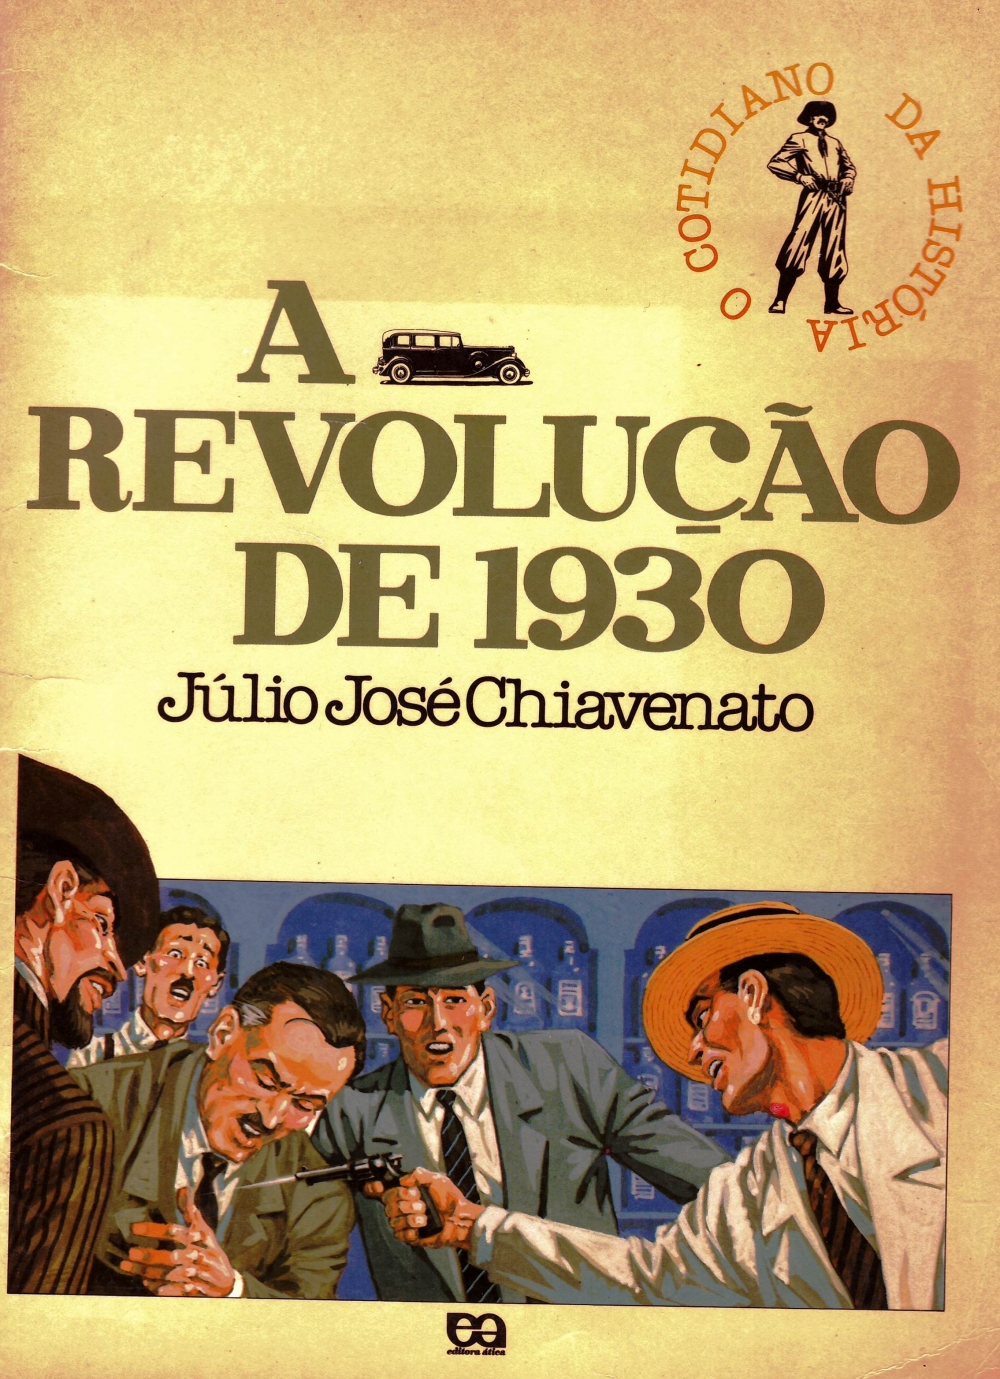 A revolução de 1930